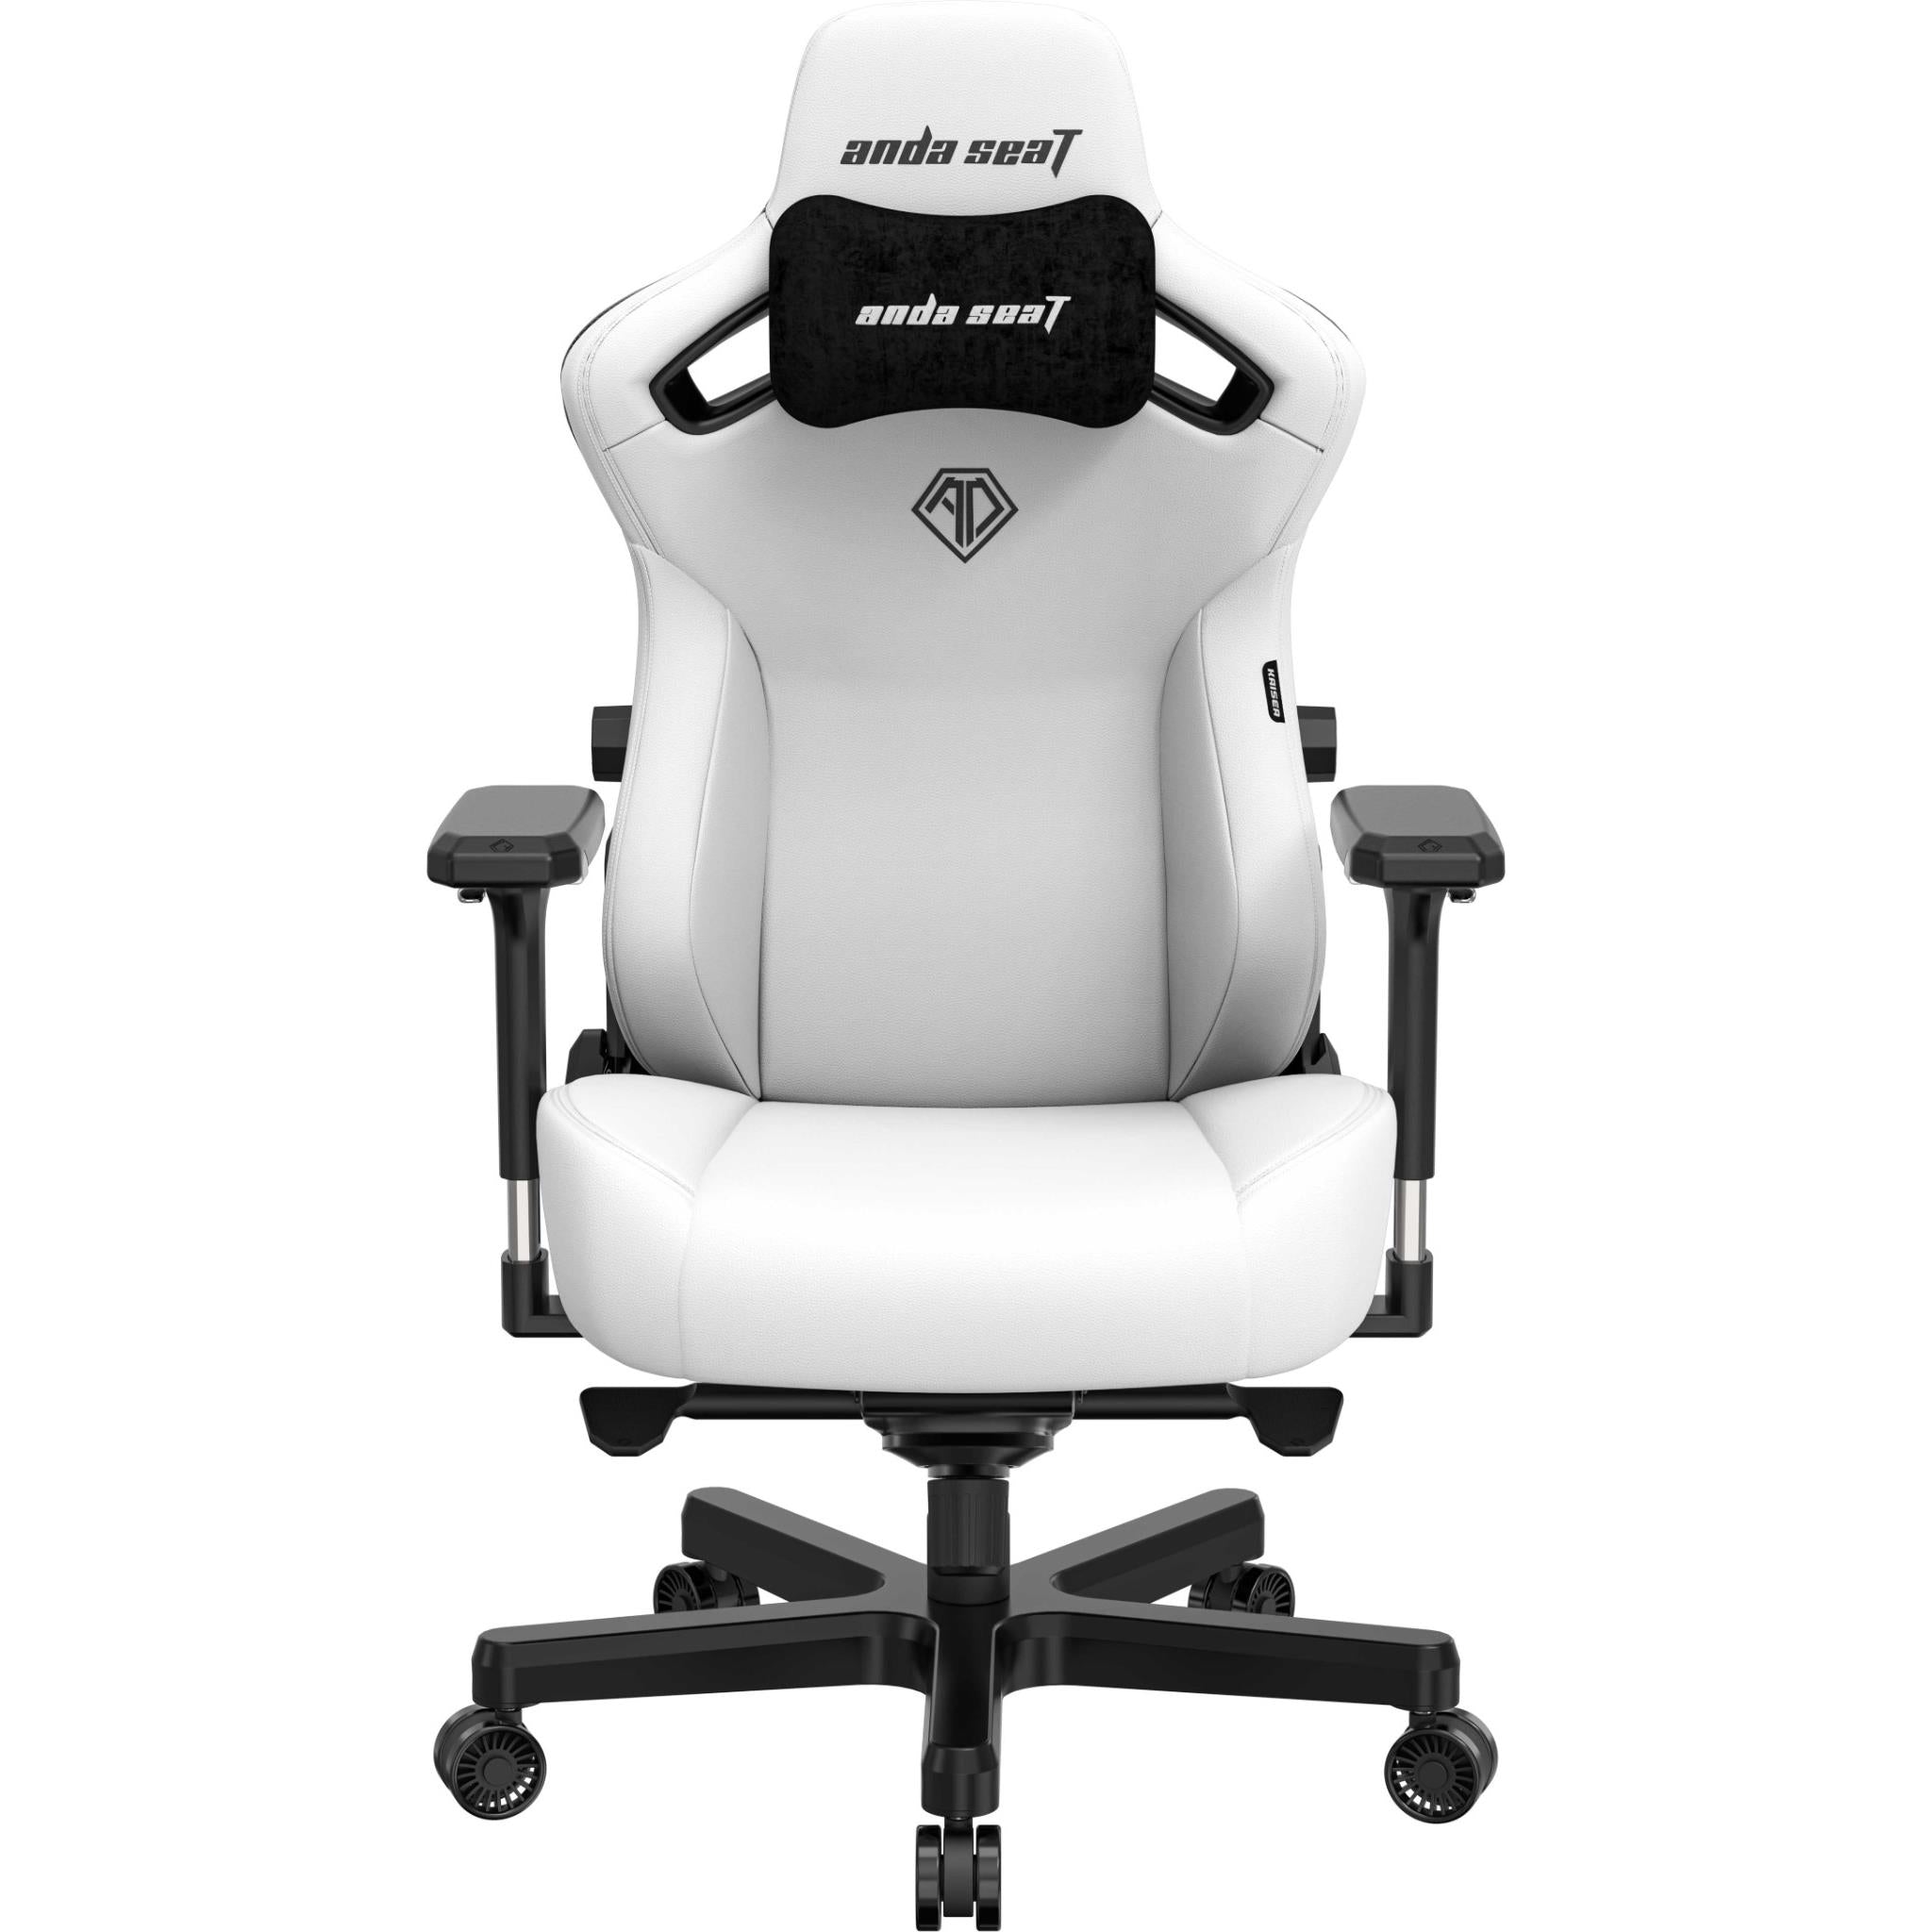 anda seat kaiser 3 series premium gaming chair white (large)